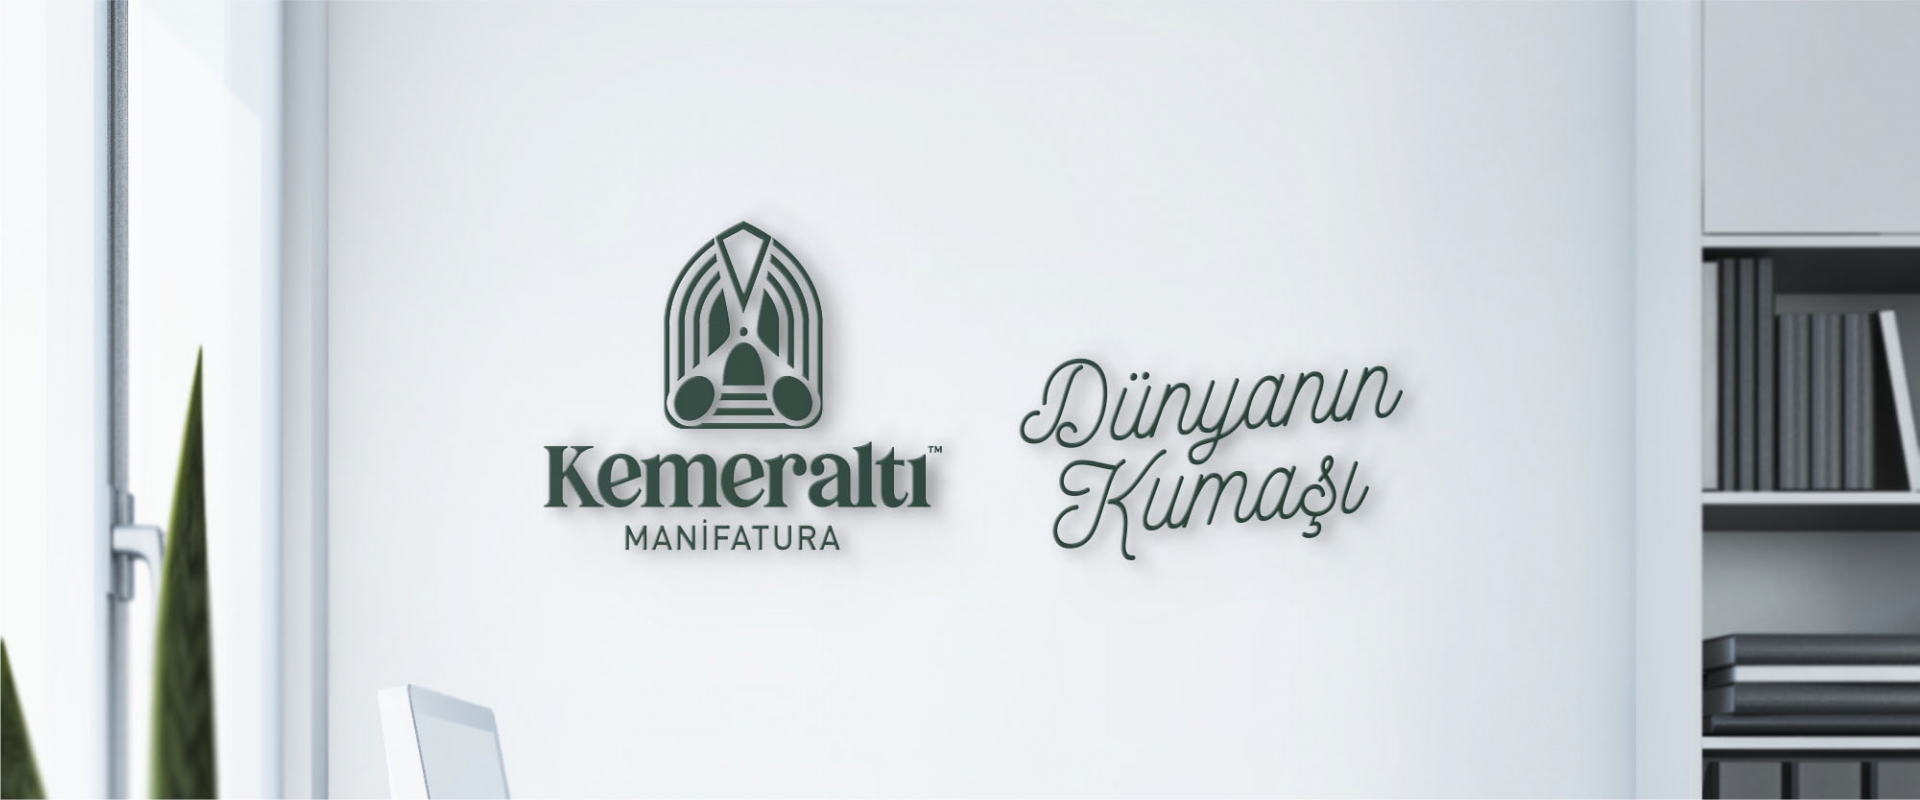 Kemeraltı Manifatura - KONSEPTIZ Advertising Agency in Turkey